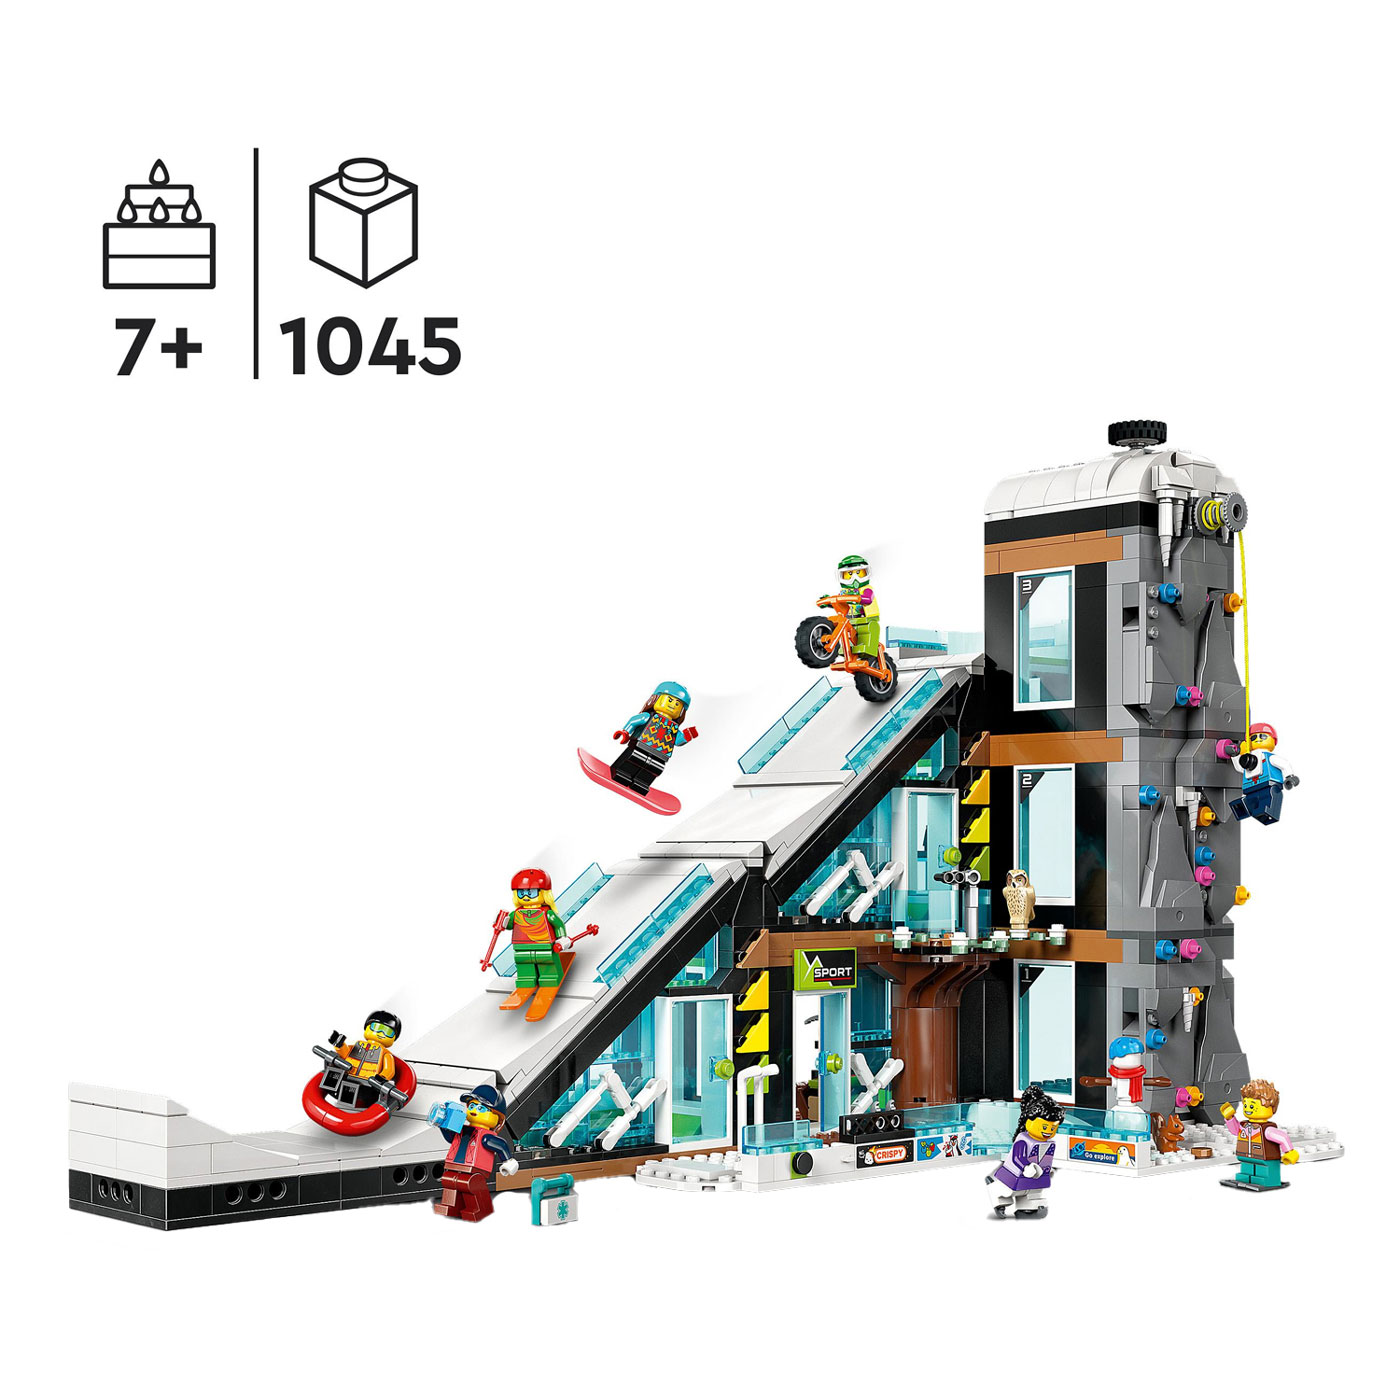 LEGO City 60366 Ski- und Kletterzentrum